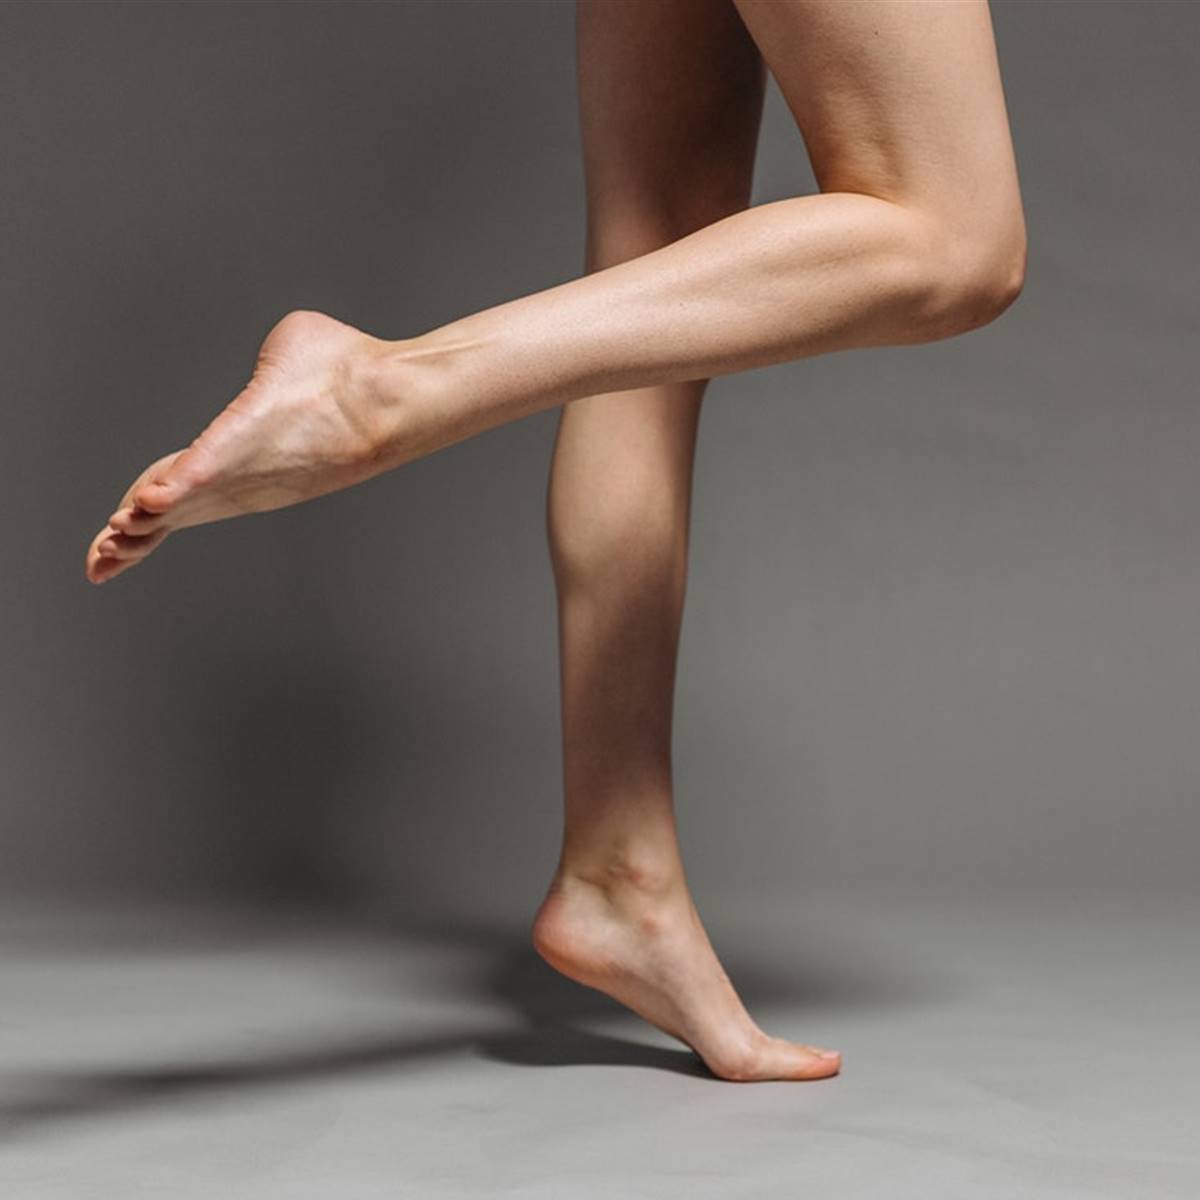 Ejercicios para activar la circulación de las piernas